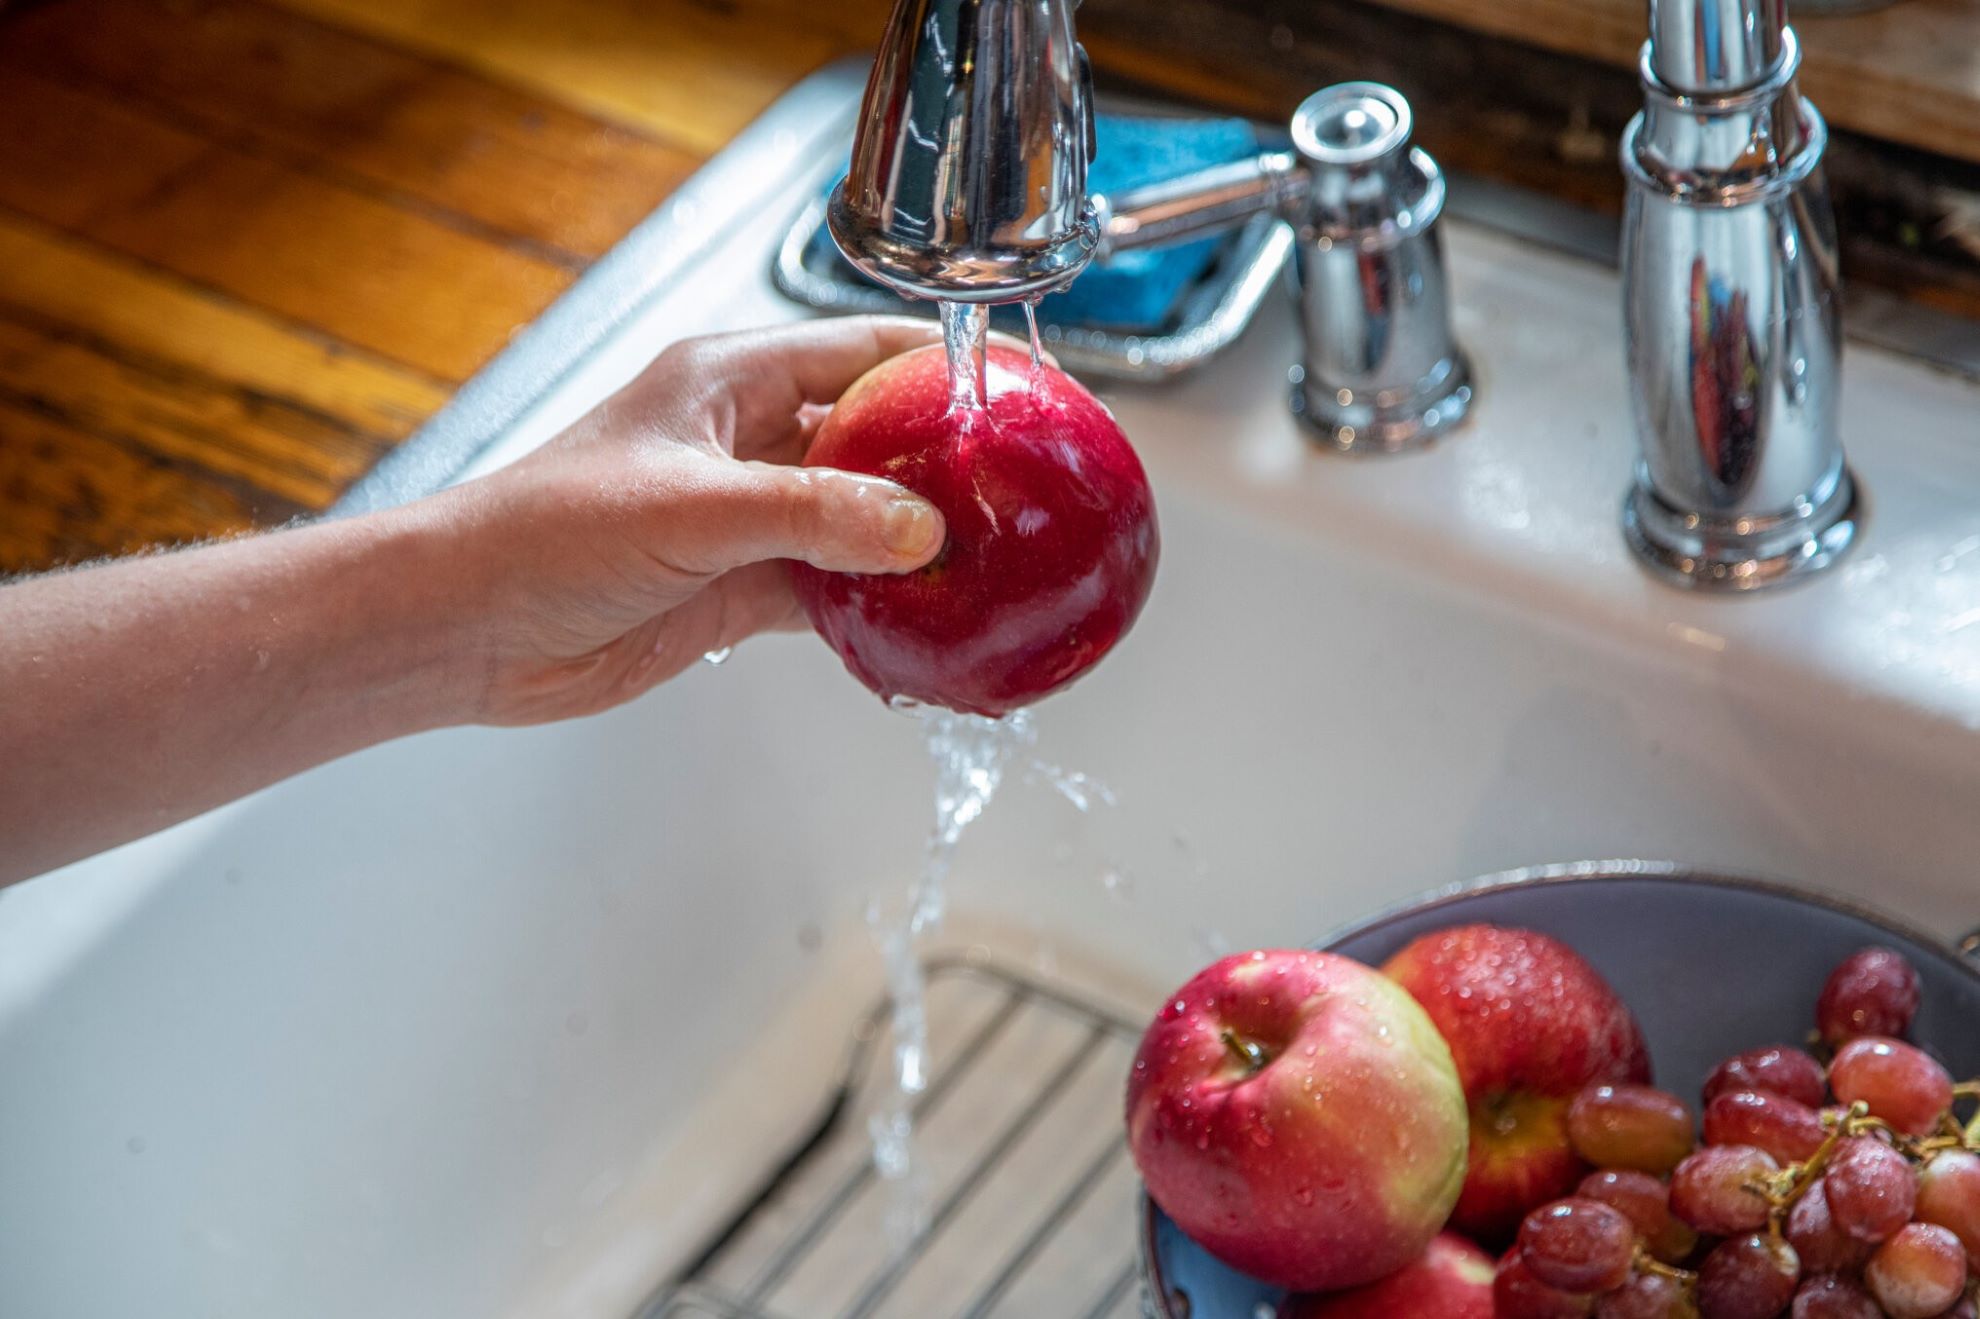 Cum să spălăm corect și să eliminăm pesticidele din fructe și legume?